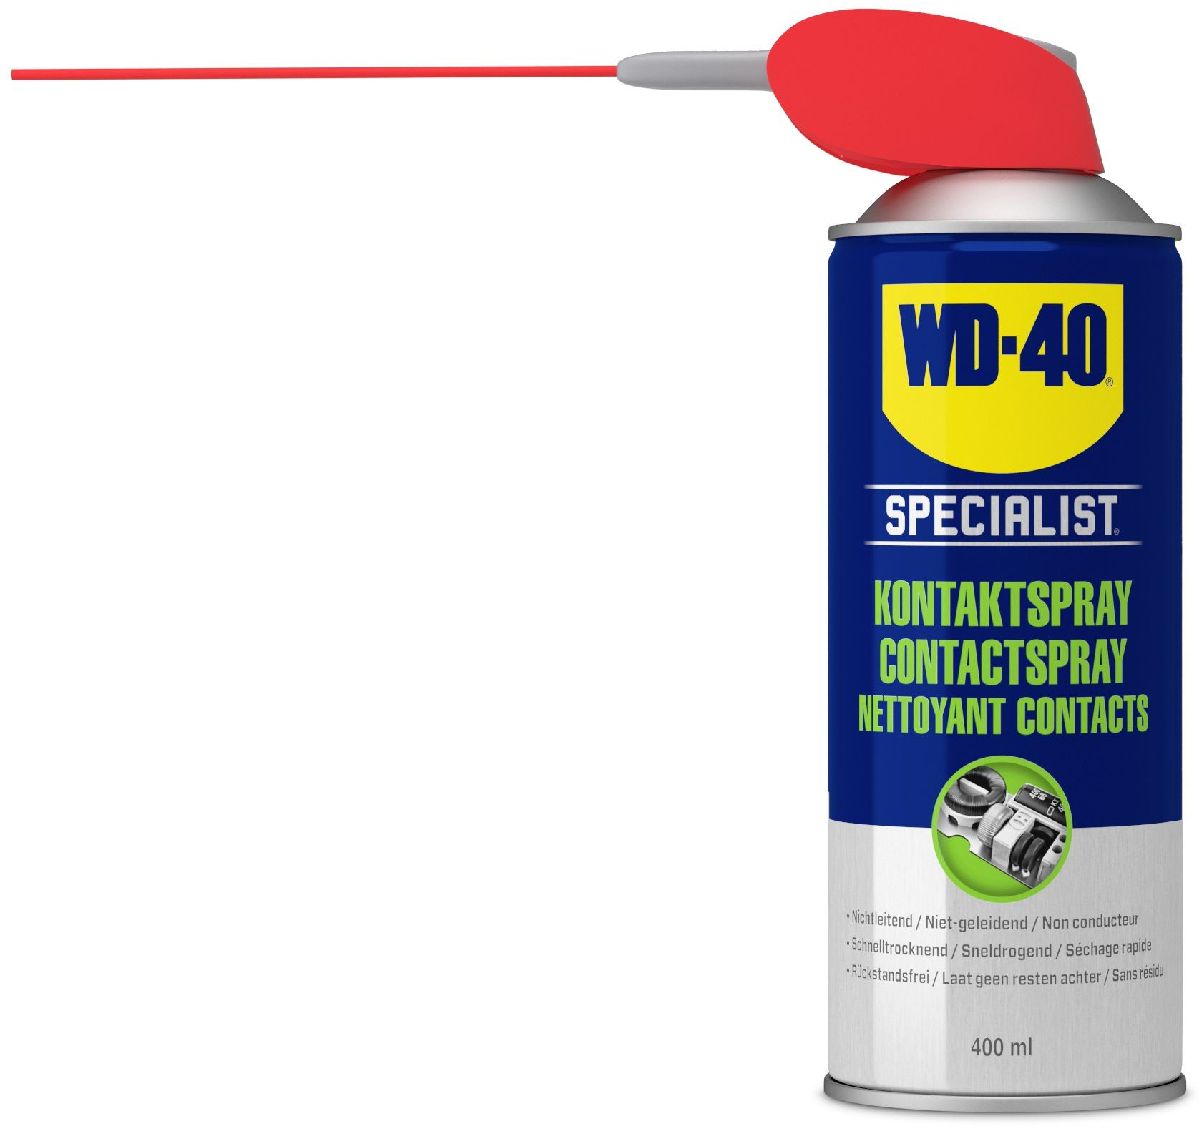 Nettoyant contact électrique séchage rapide - WD40 (400ml)